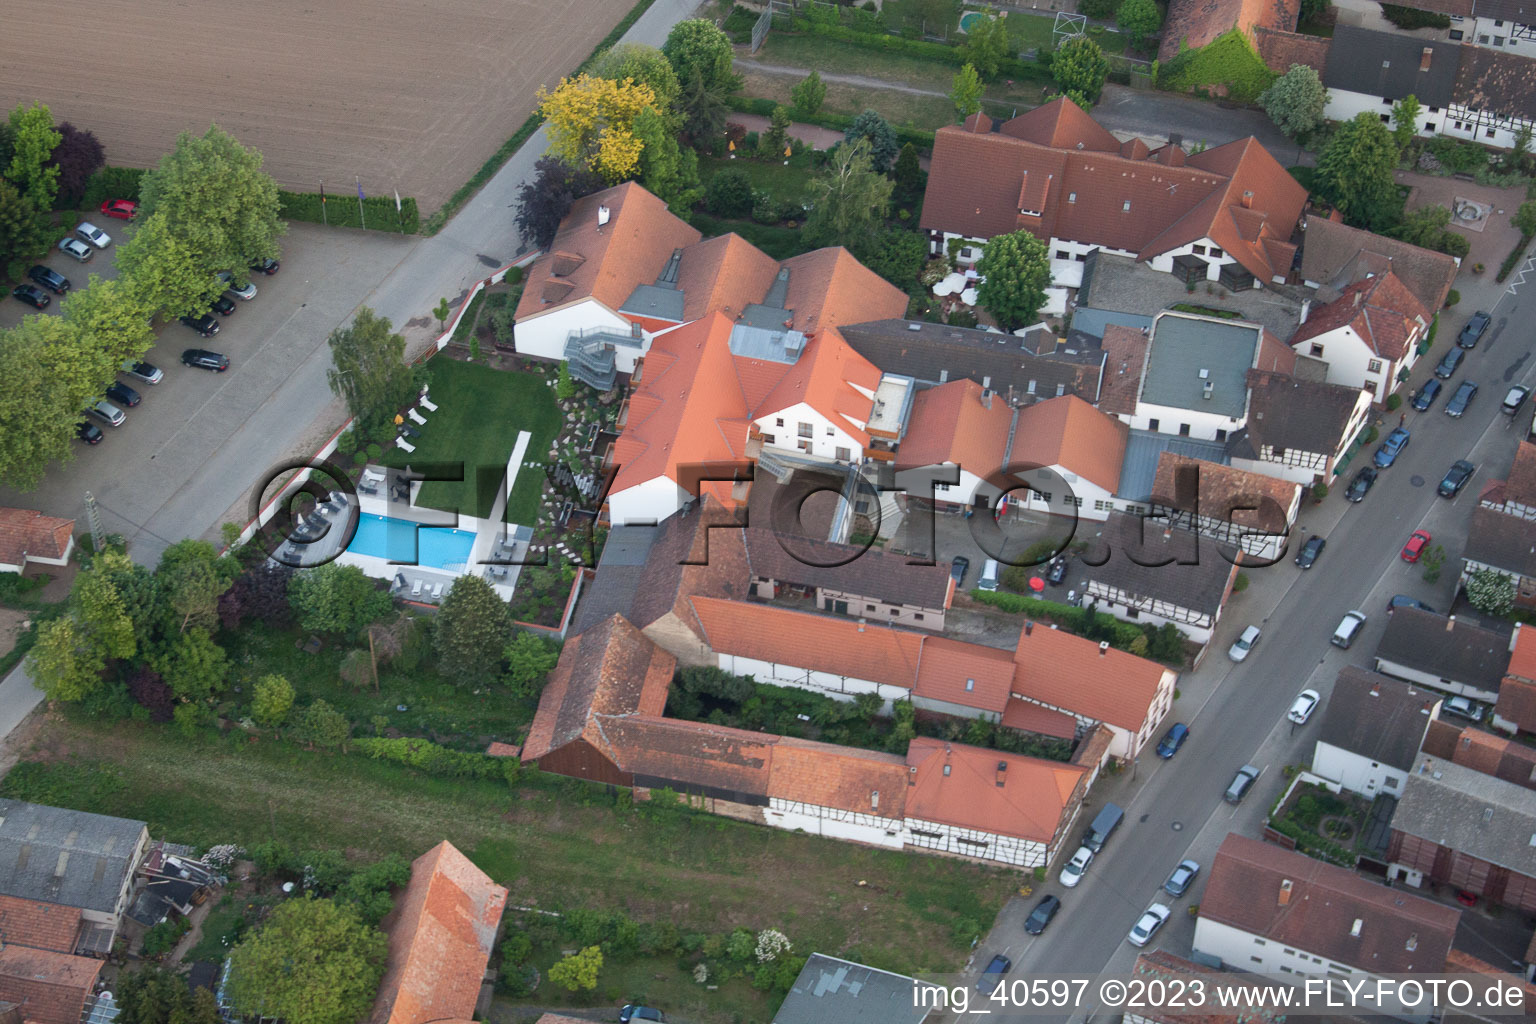 Ortsteil Hayna in Herxheim bei Landau/Pfalz im Bundesland Rheinland-Pfalz, Deutschland von der Drohne aus gesehen